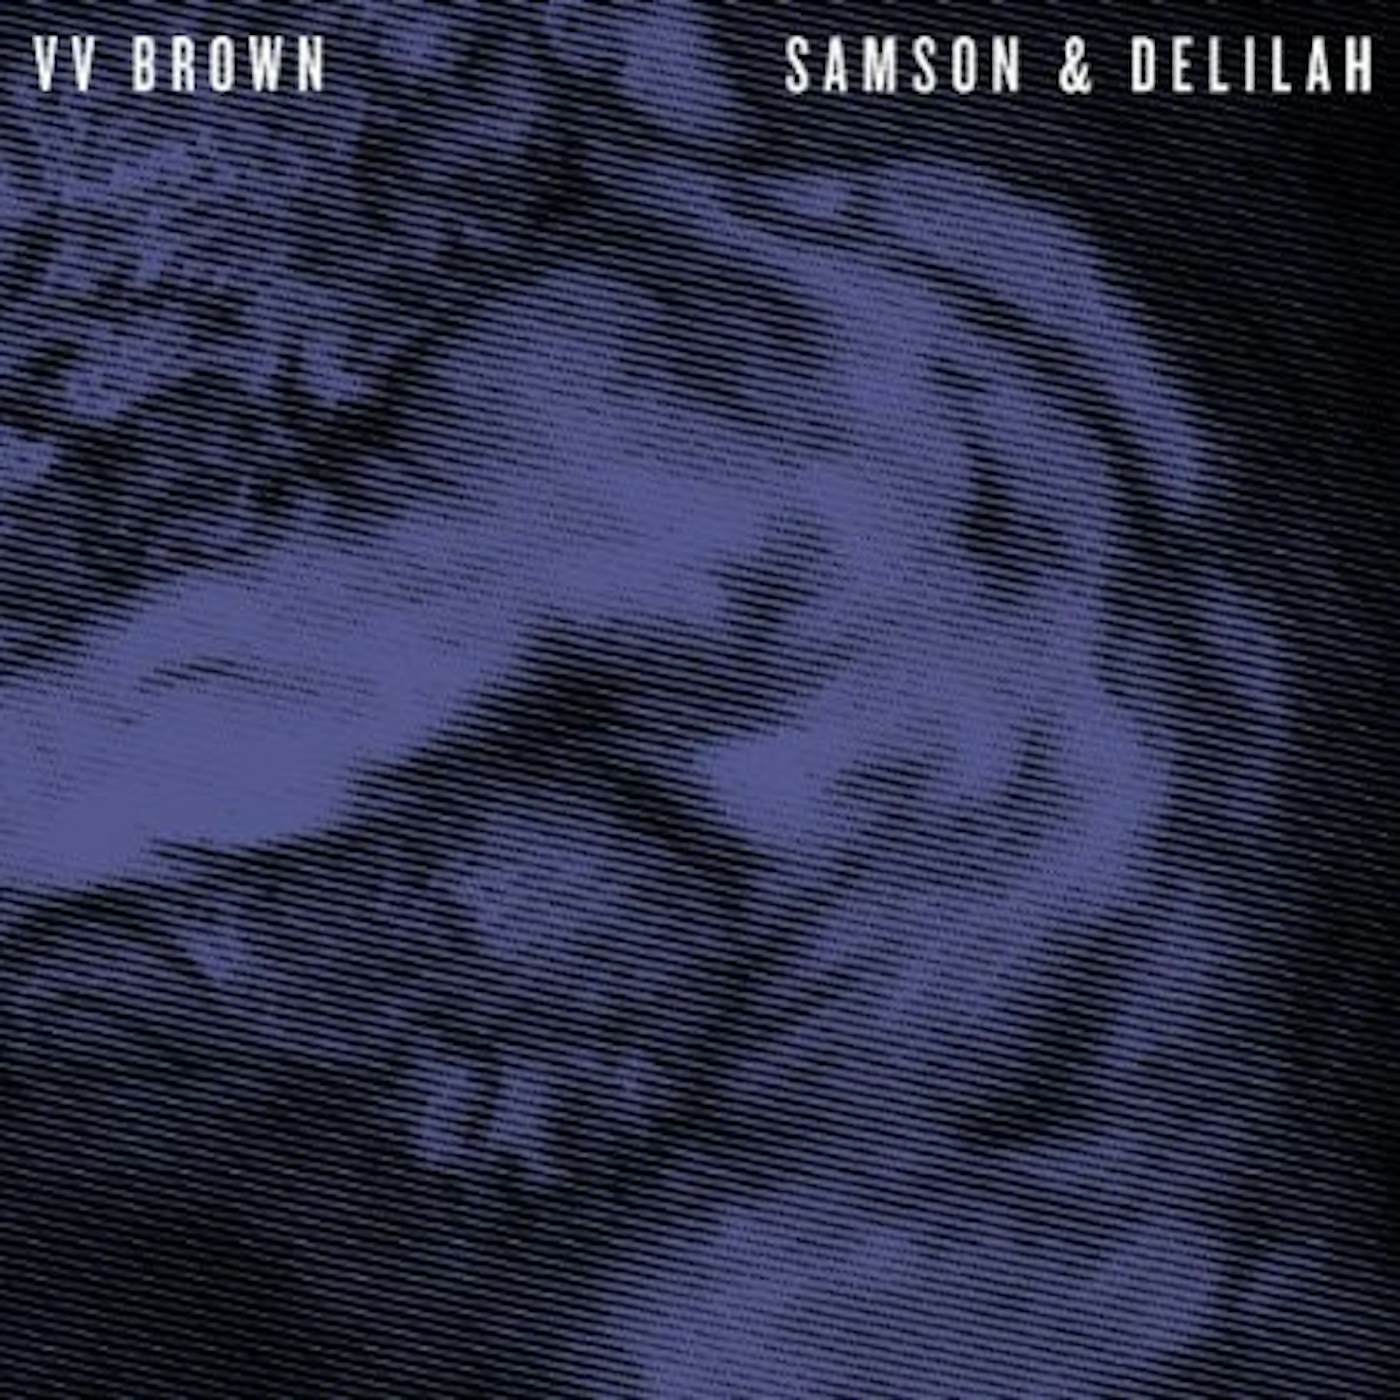 V V Brown Samson & Delilah Vinyl Record